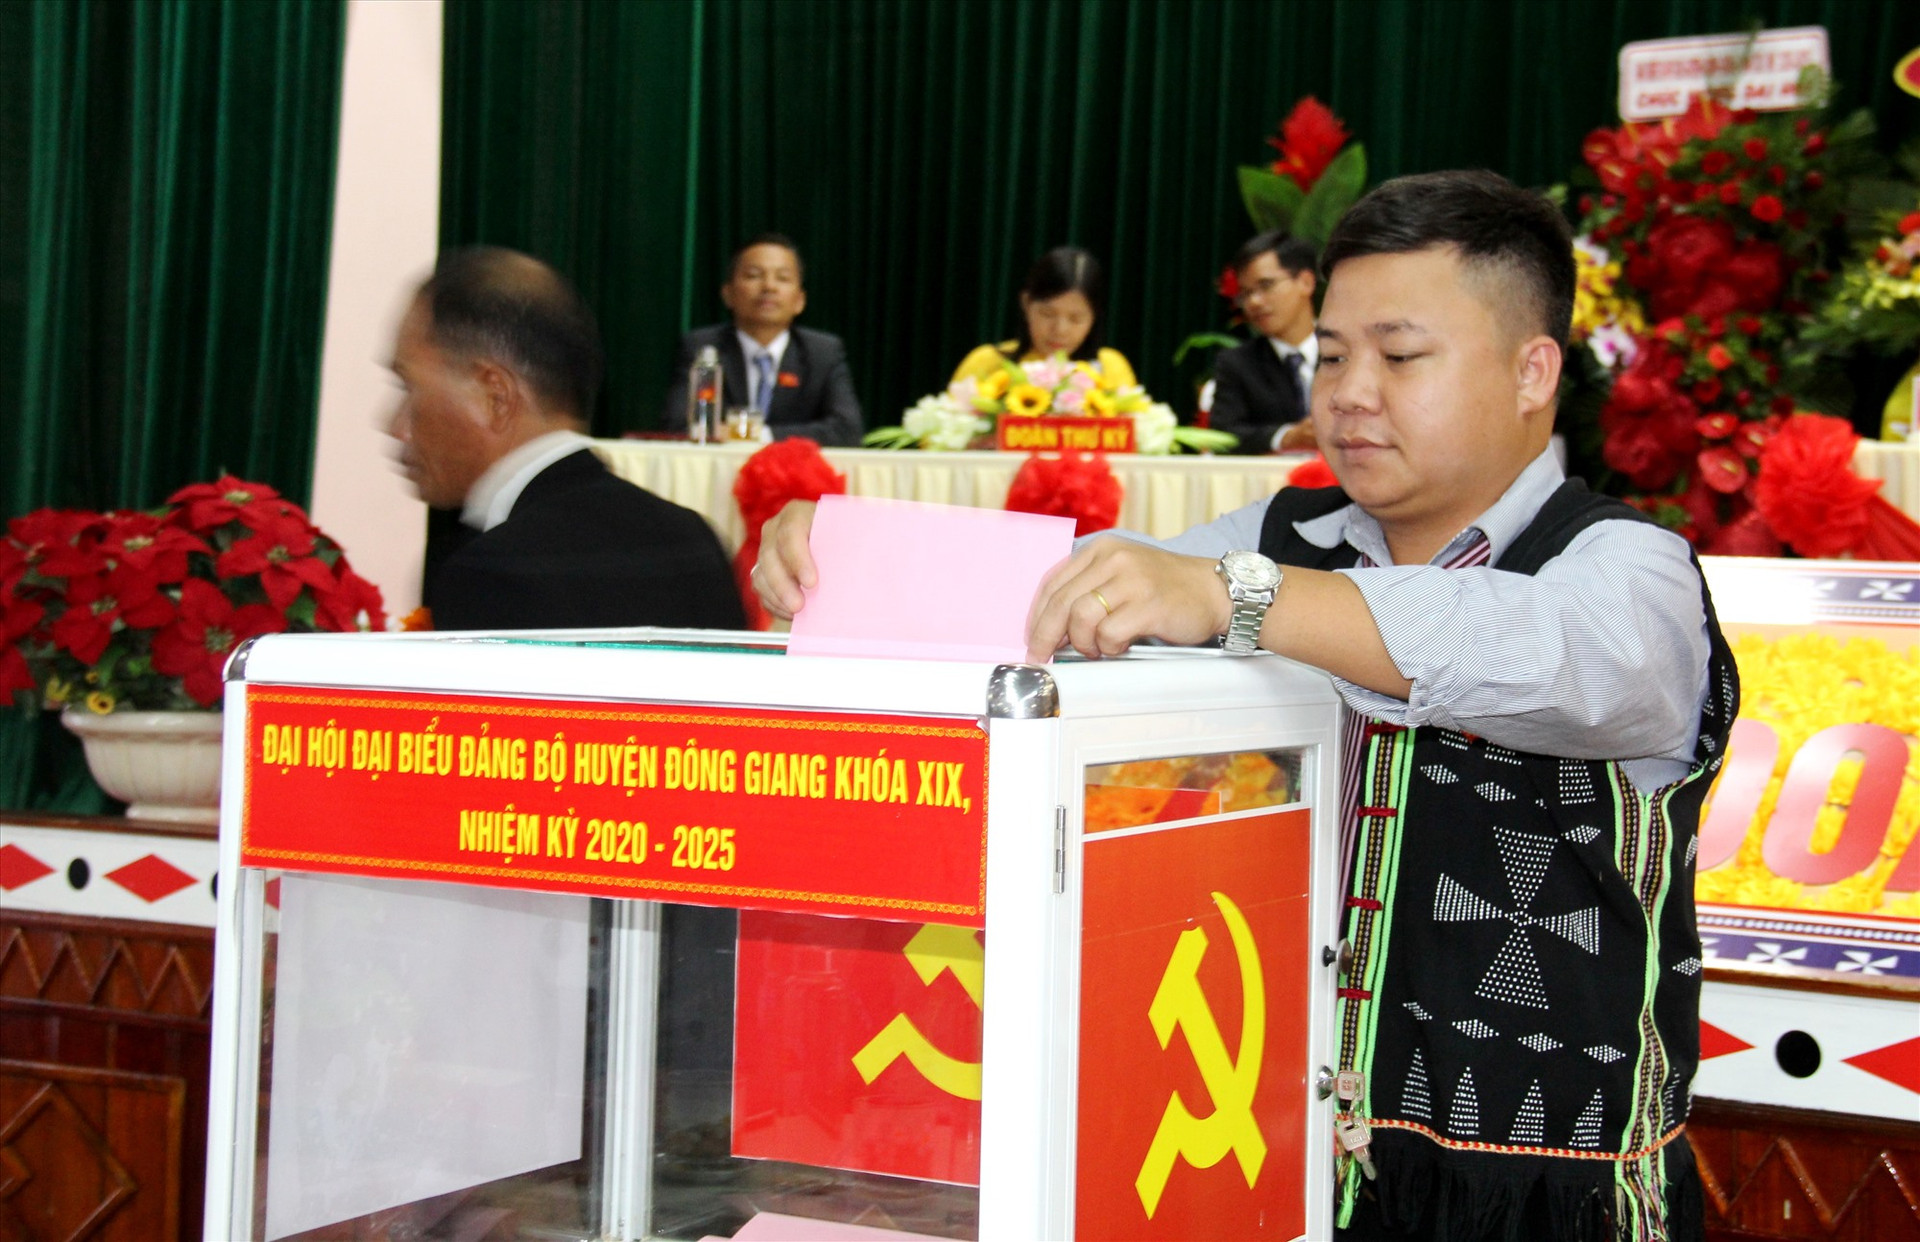 Các đại biểu bỏ phiếu bầu Ban chấp hành Đảng bộ huyện Đông Giang nhiệm kỳ 2020 - 2025. Ảnh: A.N